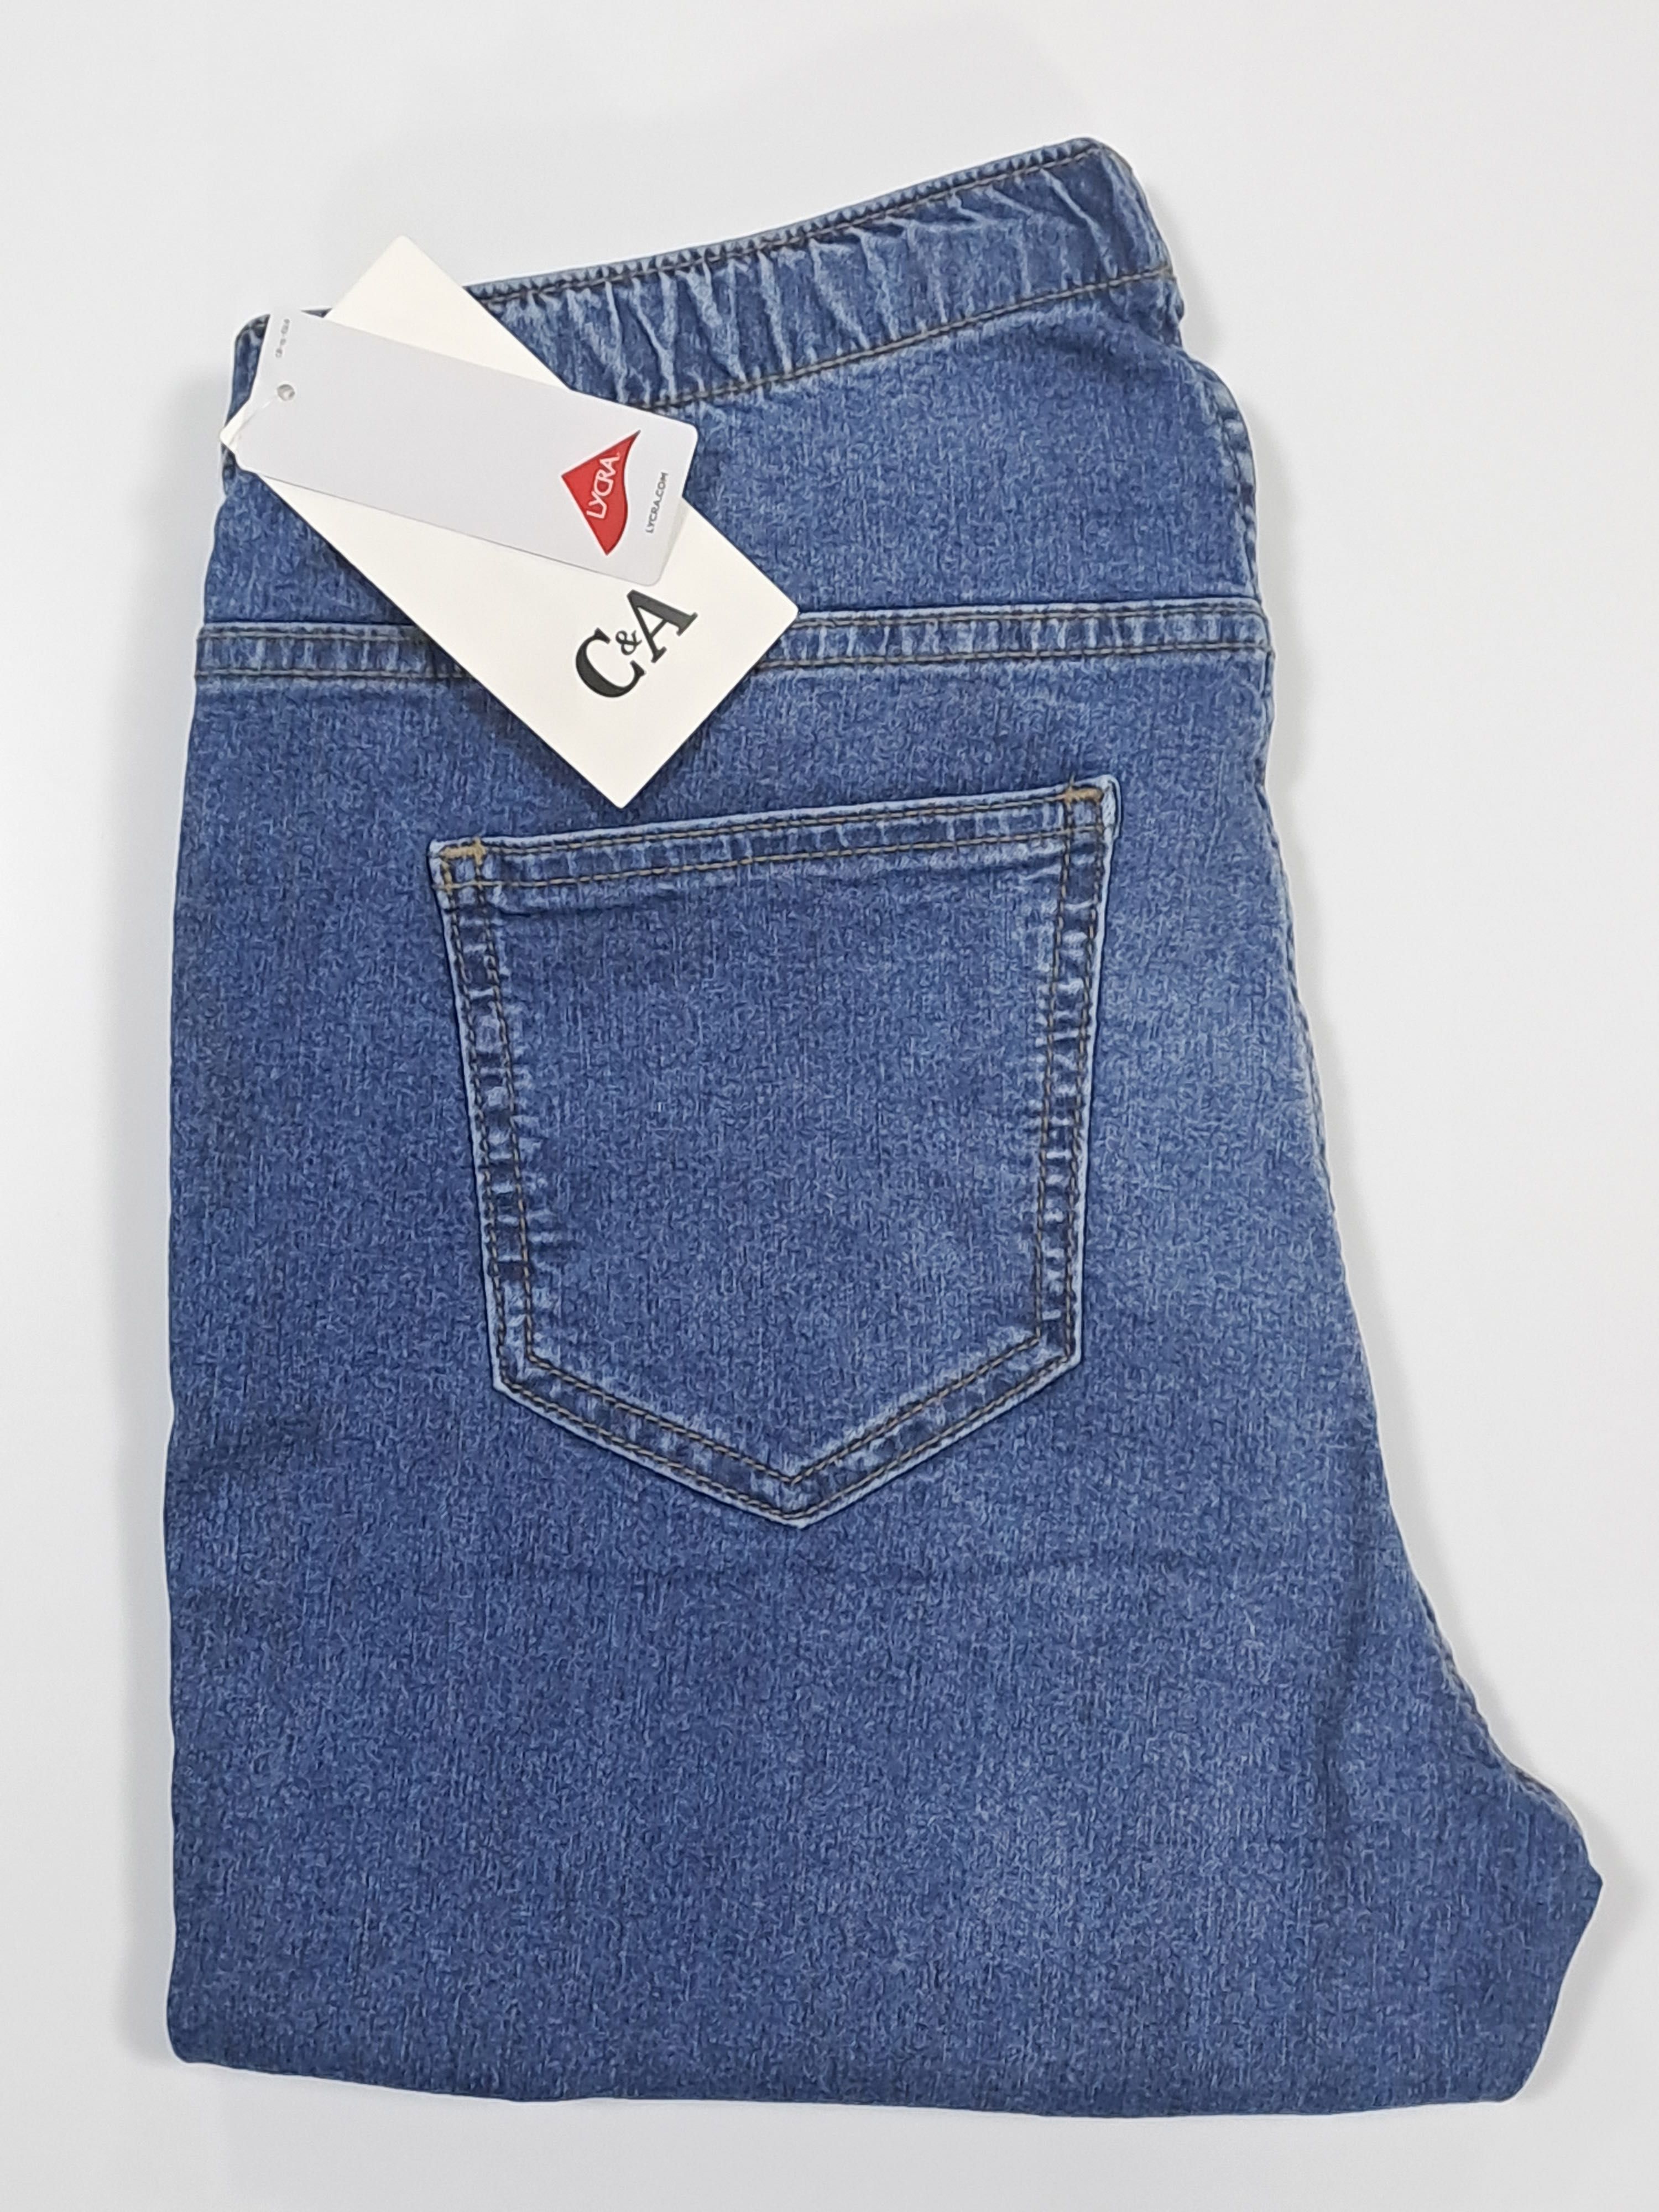 C&A джинсы женские джеггинсы скинни slim fit новые с биркой синие 38